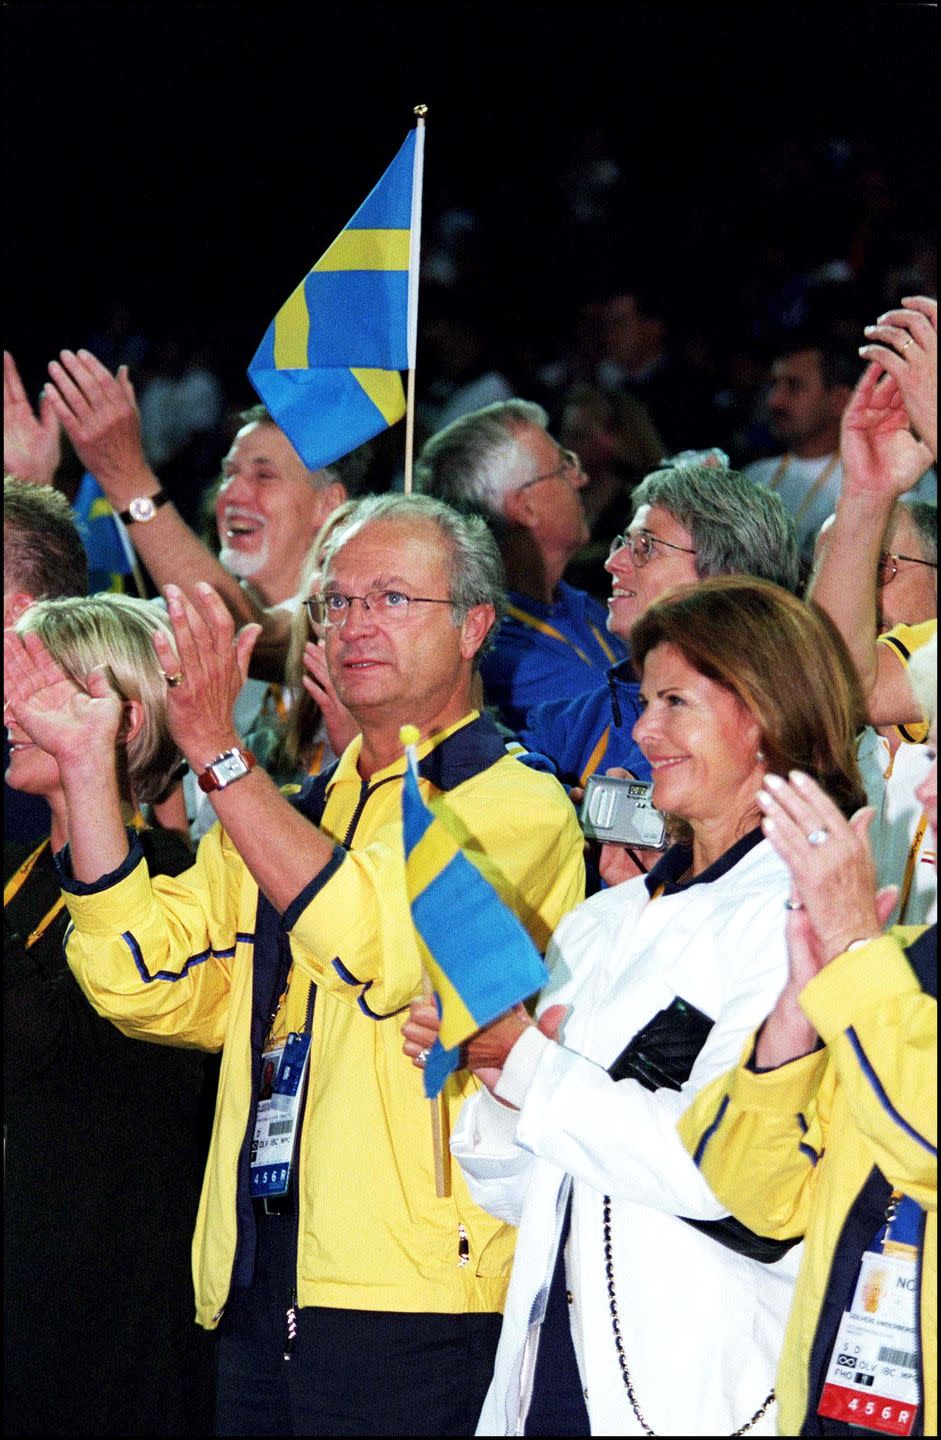 queen silvia and king carl gustav of sweden attend men's wrestling 97 kgs in sydney, australia on september 26, 2000